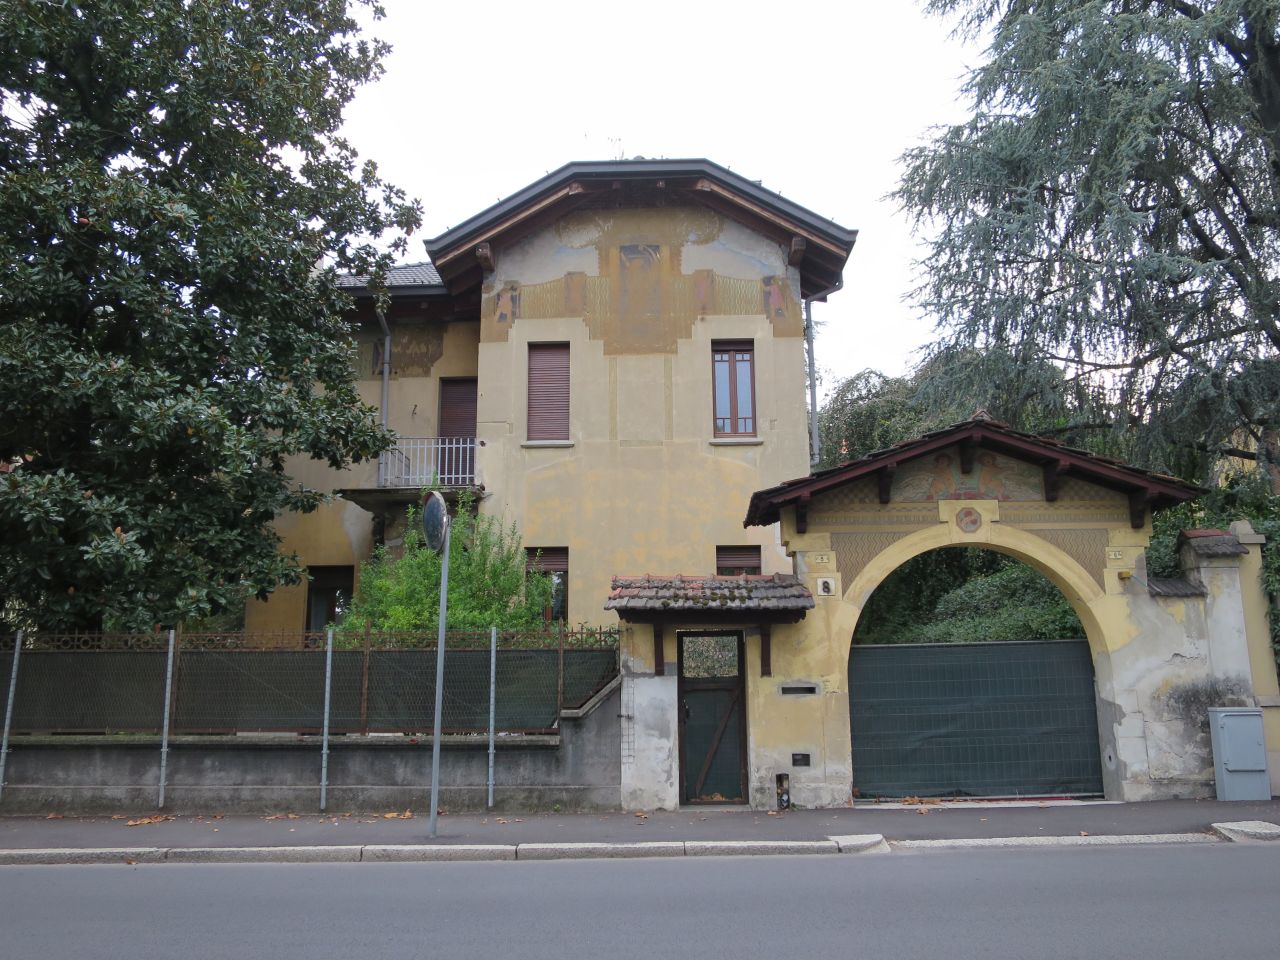 casa Francioni - La Rocca ora Cattaneo (casa) - Novara (NO)  (XX; XX; XX; XX; XX; XX; XX; XX; XX)